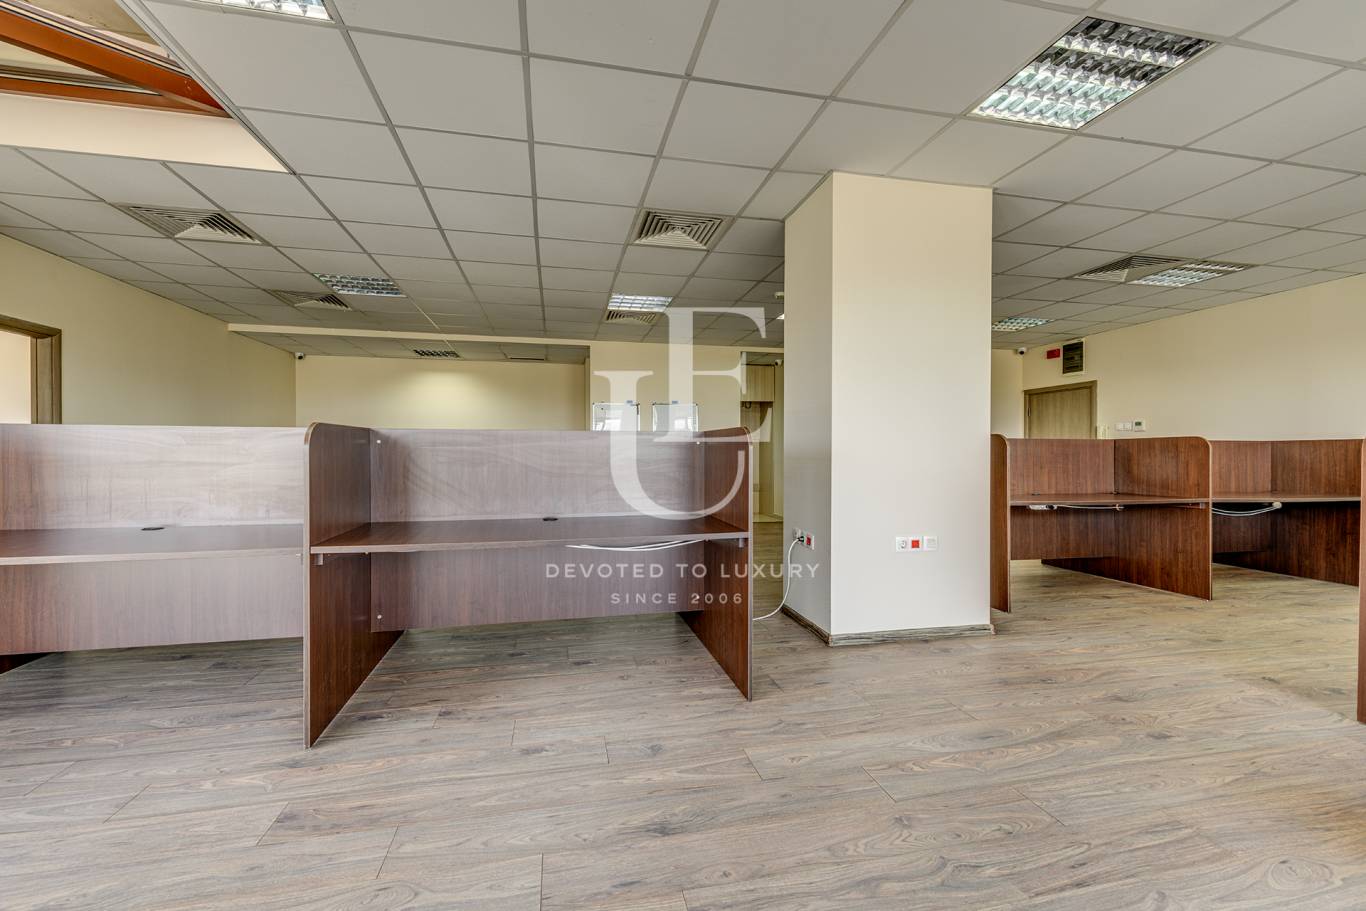 Офис под наем в София, Студентски град - код на имота: N17700 - image 10